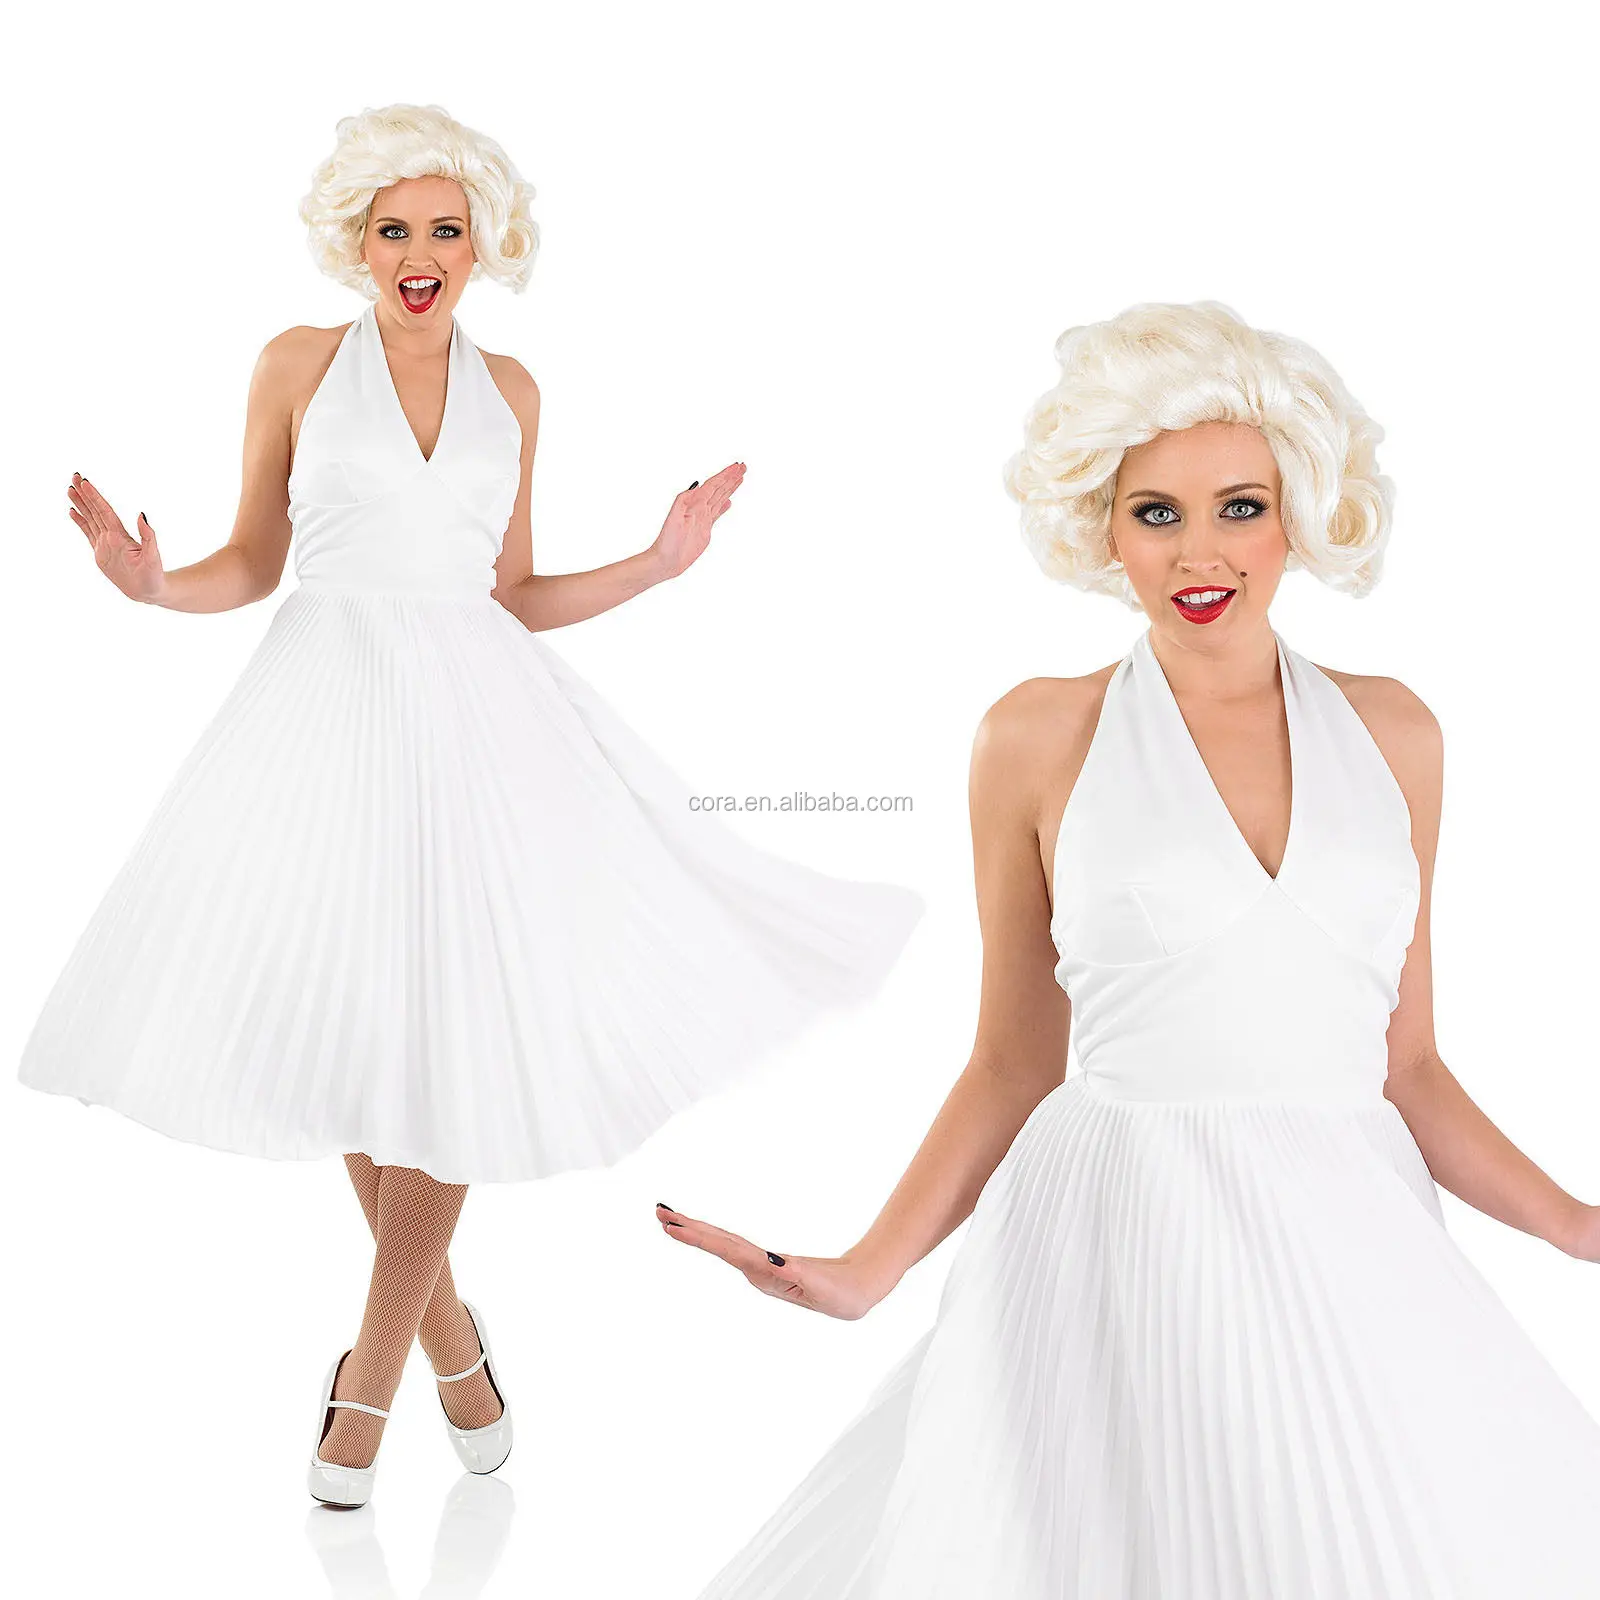 Мерлин Монро в белом платье